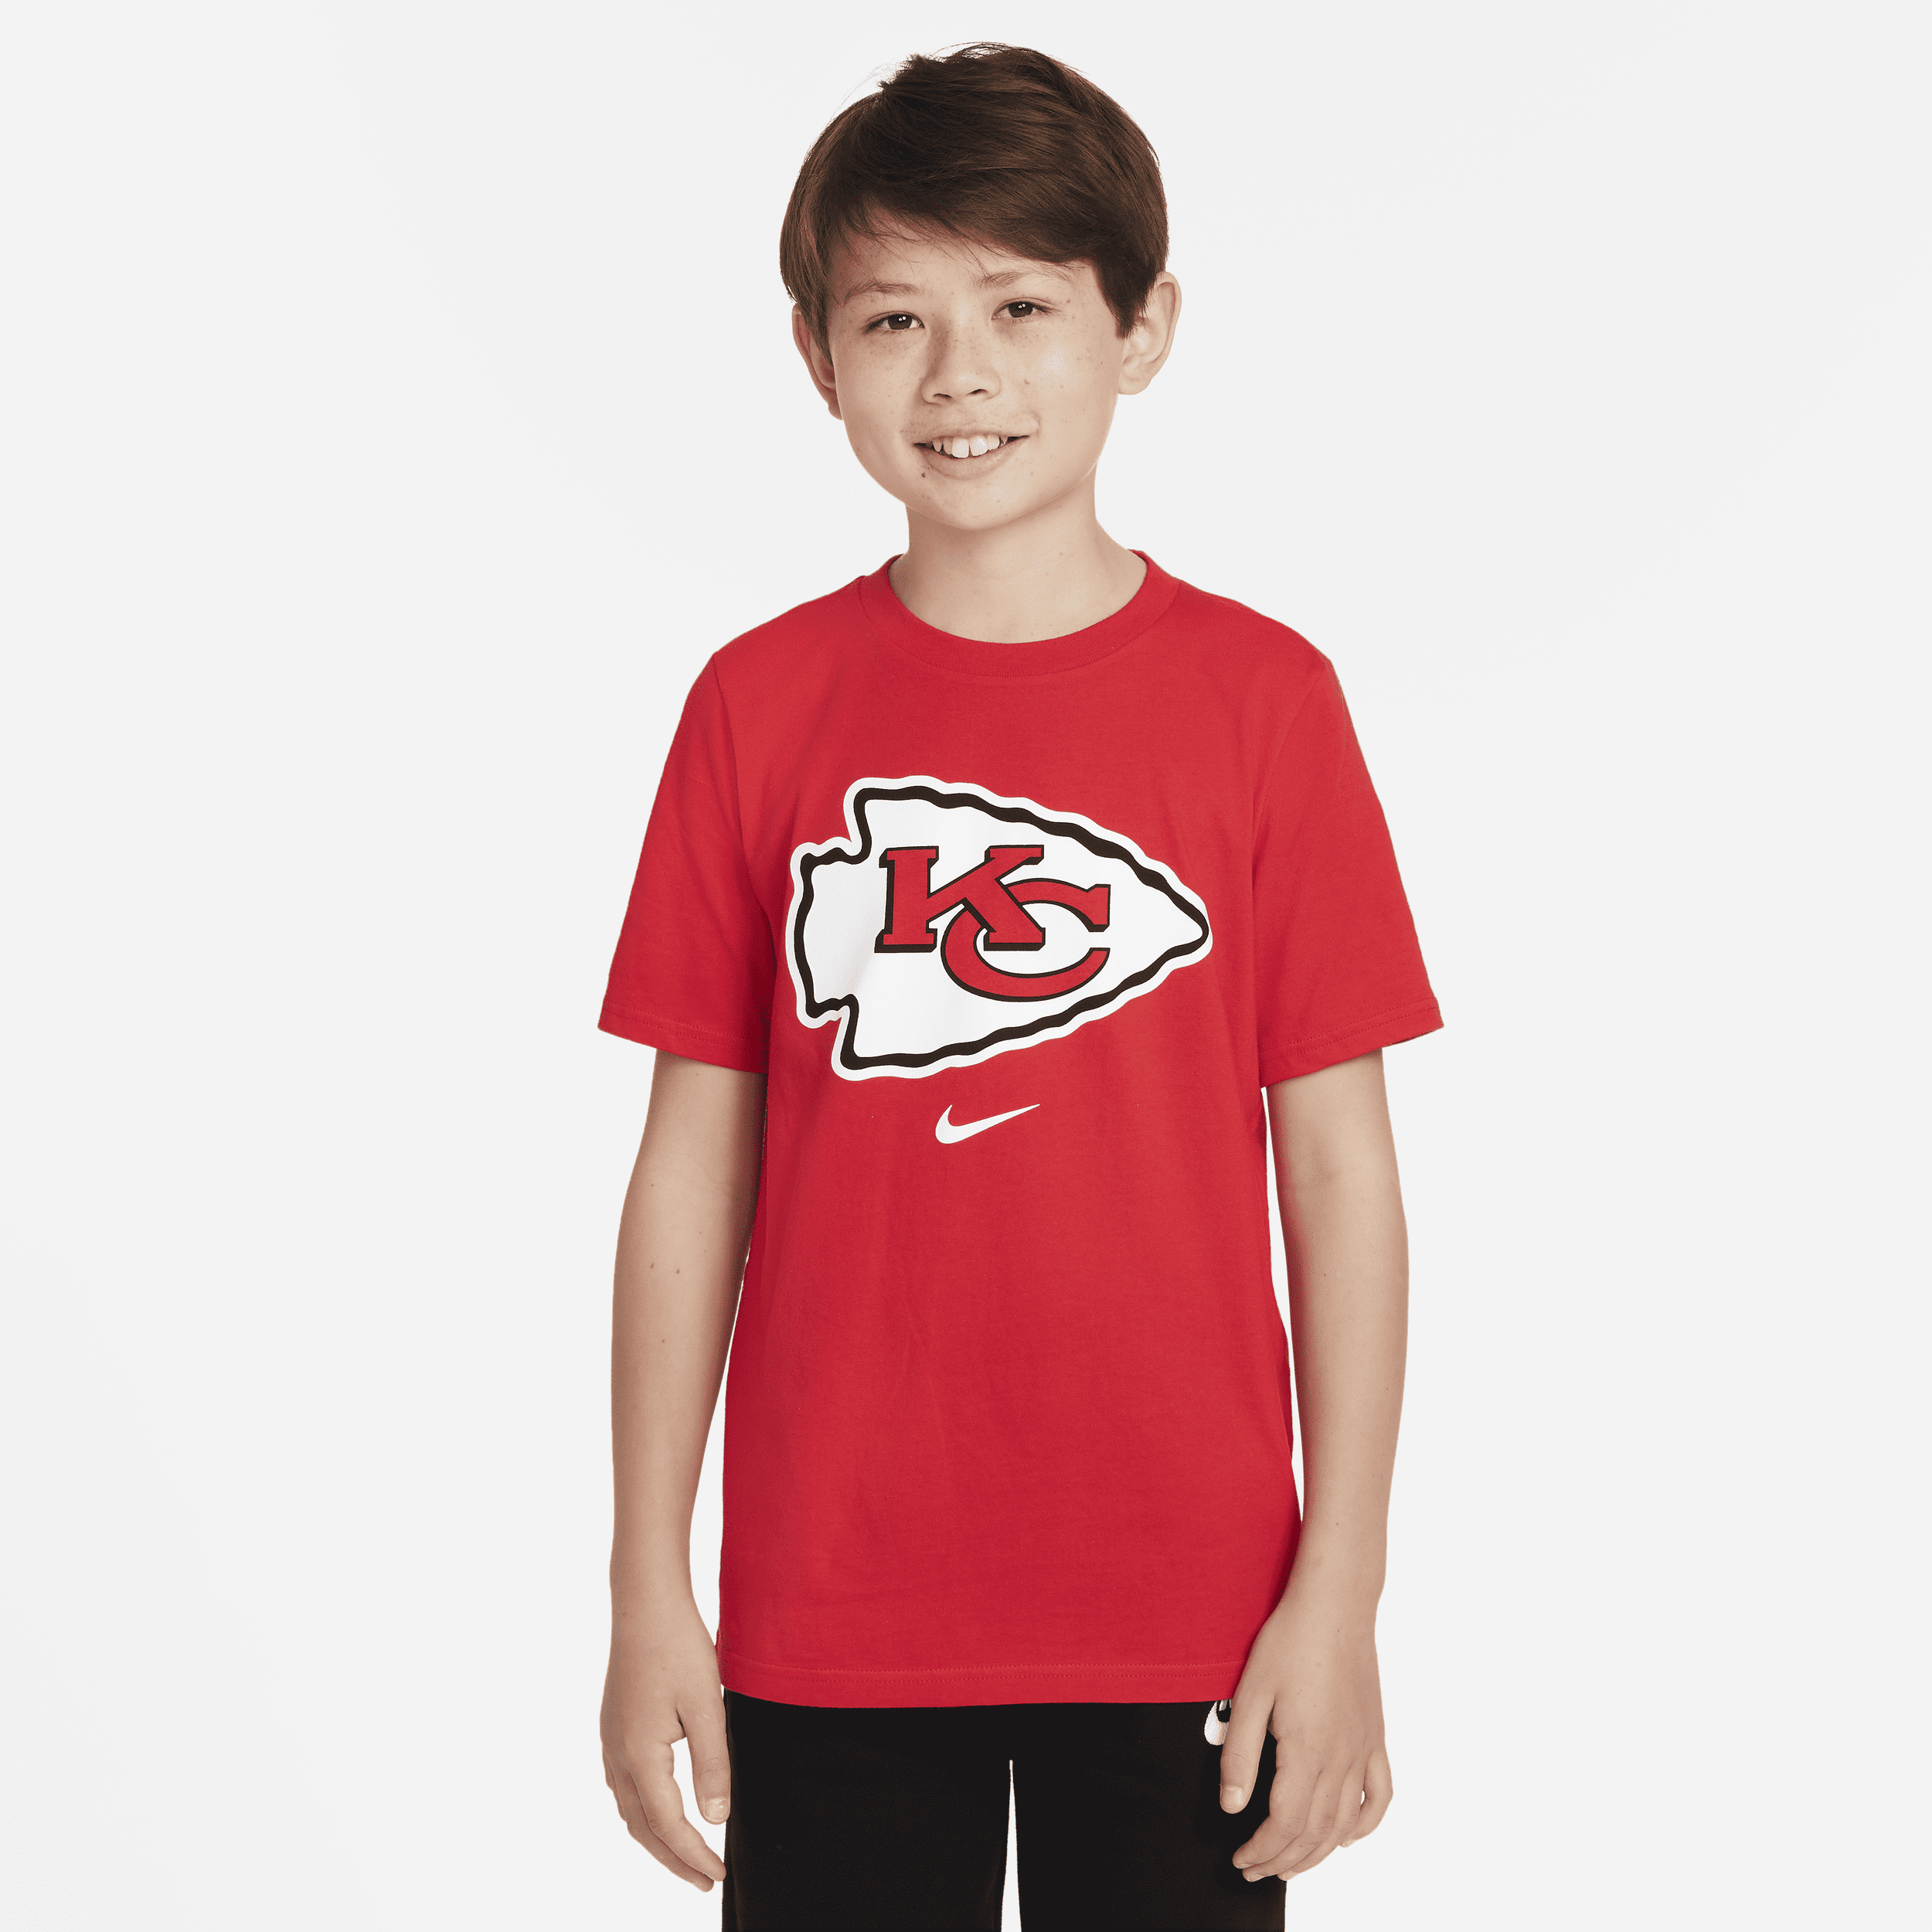 T-shirt Nike (NFL Kansas City Chiefs) - Ragazzo/a - Rosso